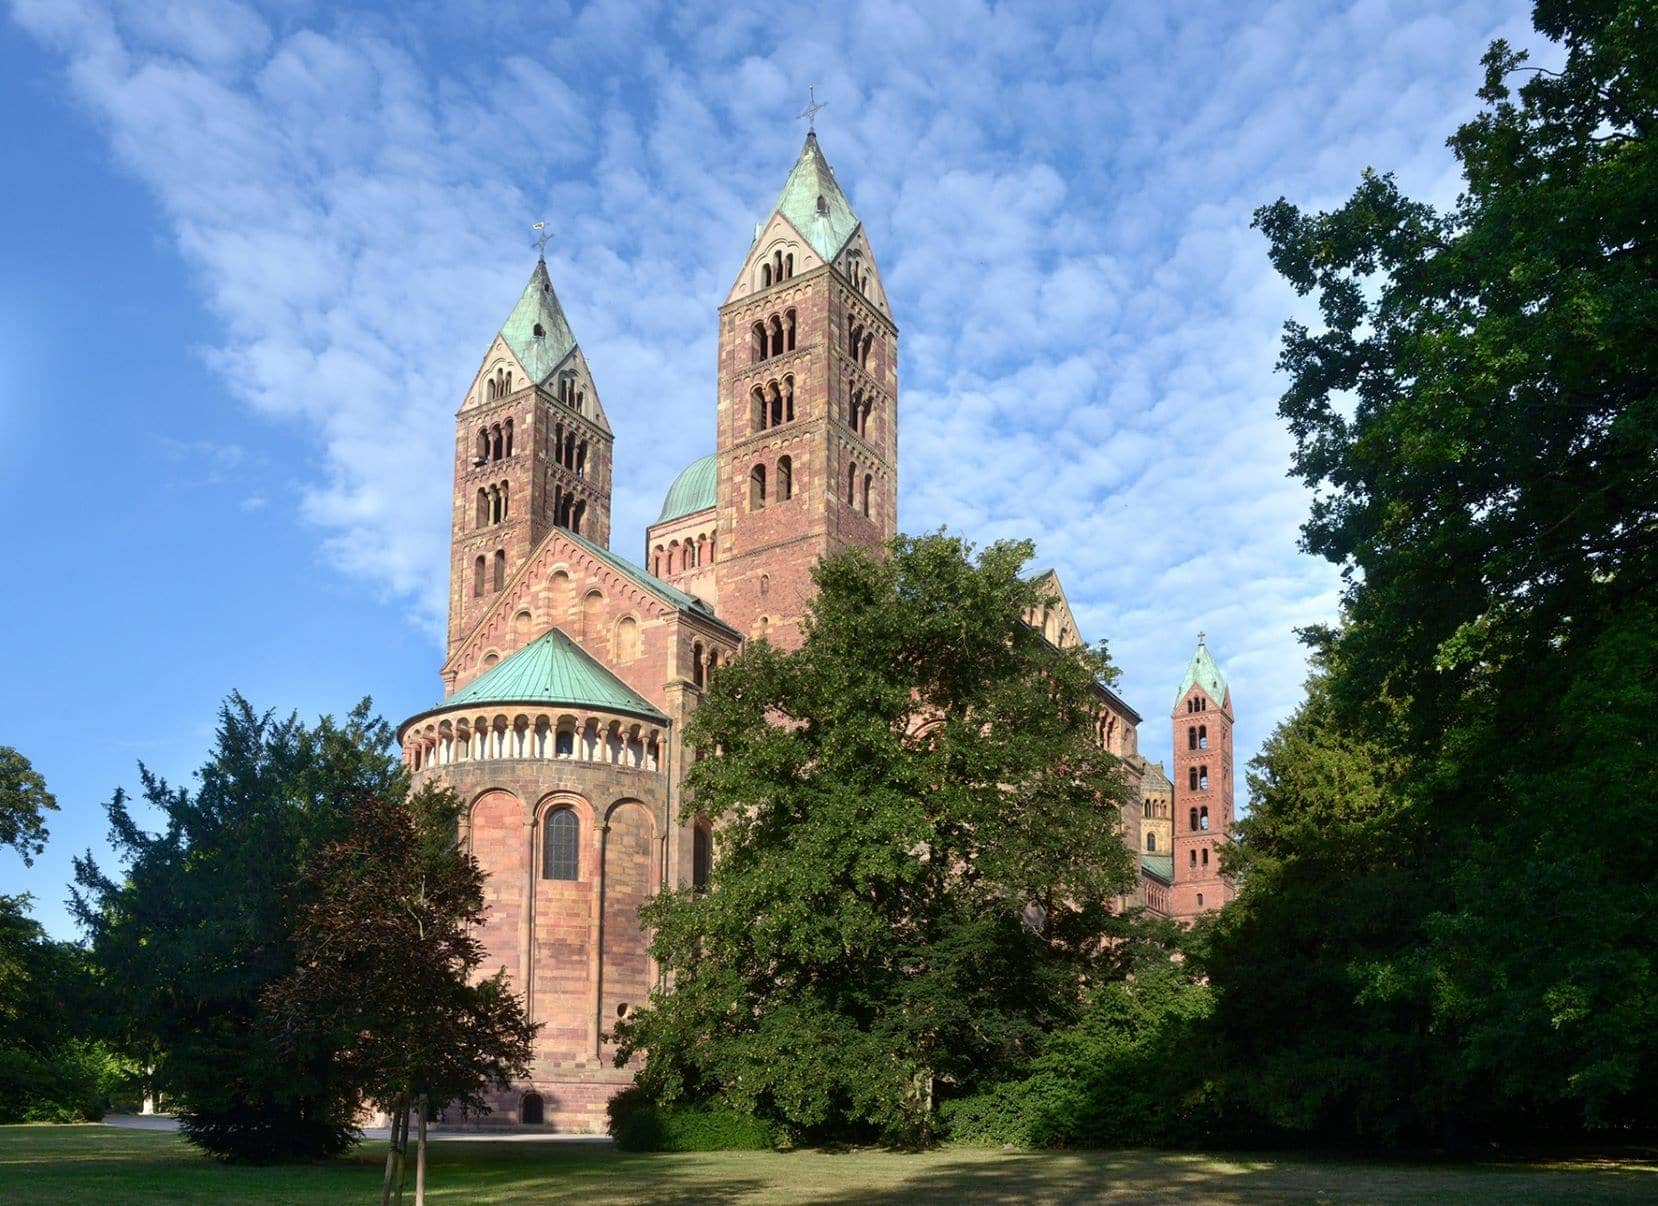 Außenansicht des Doms zu Speyer